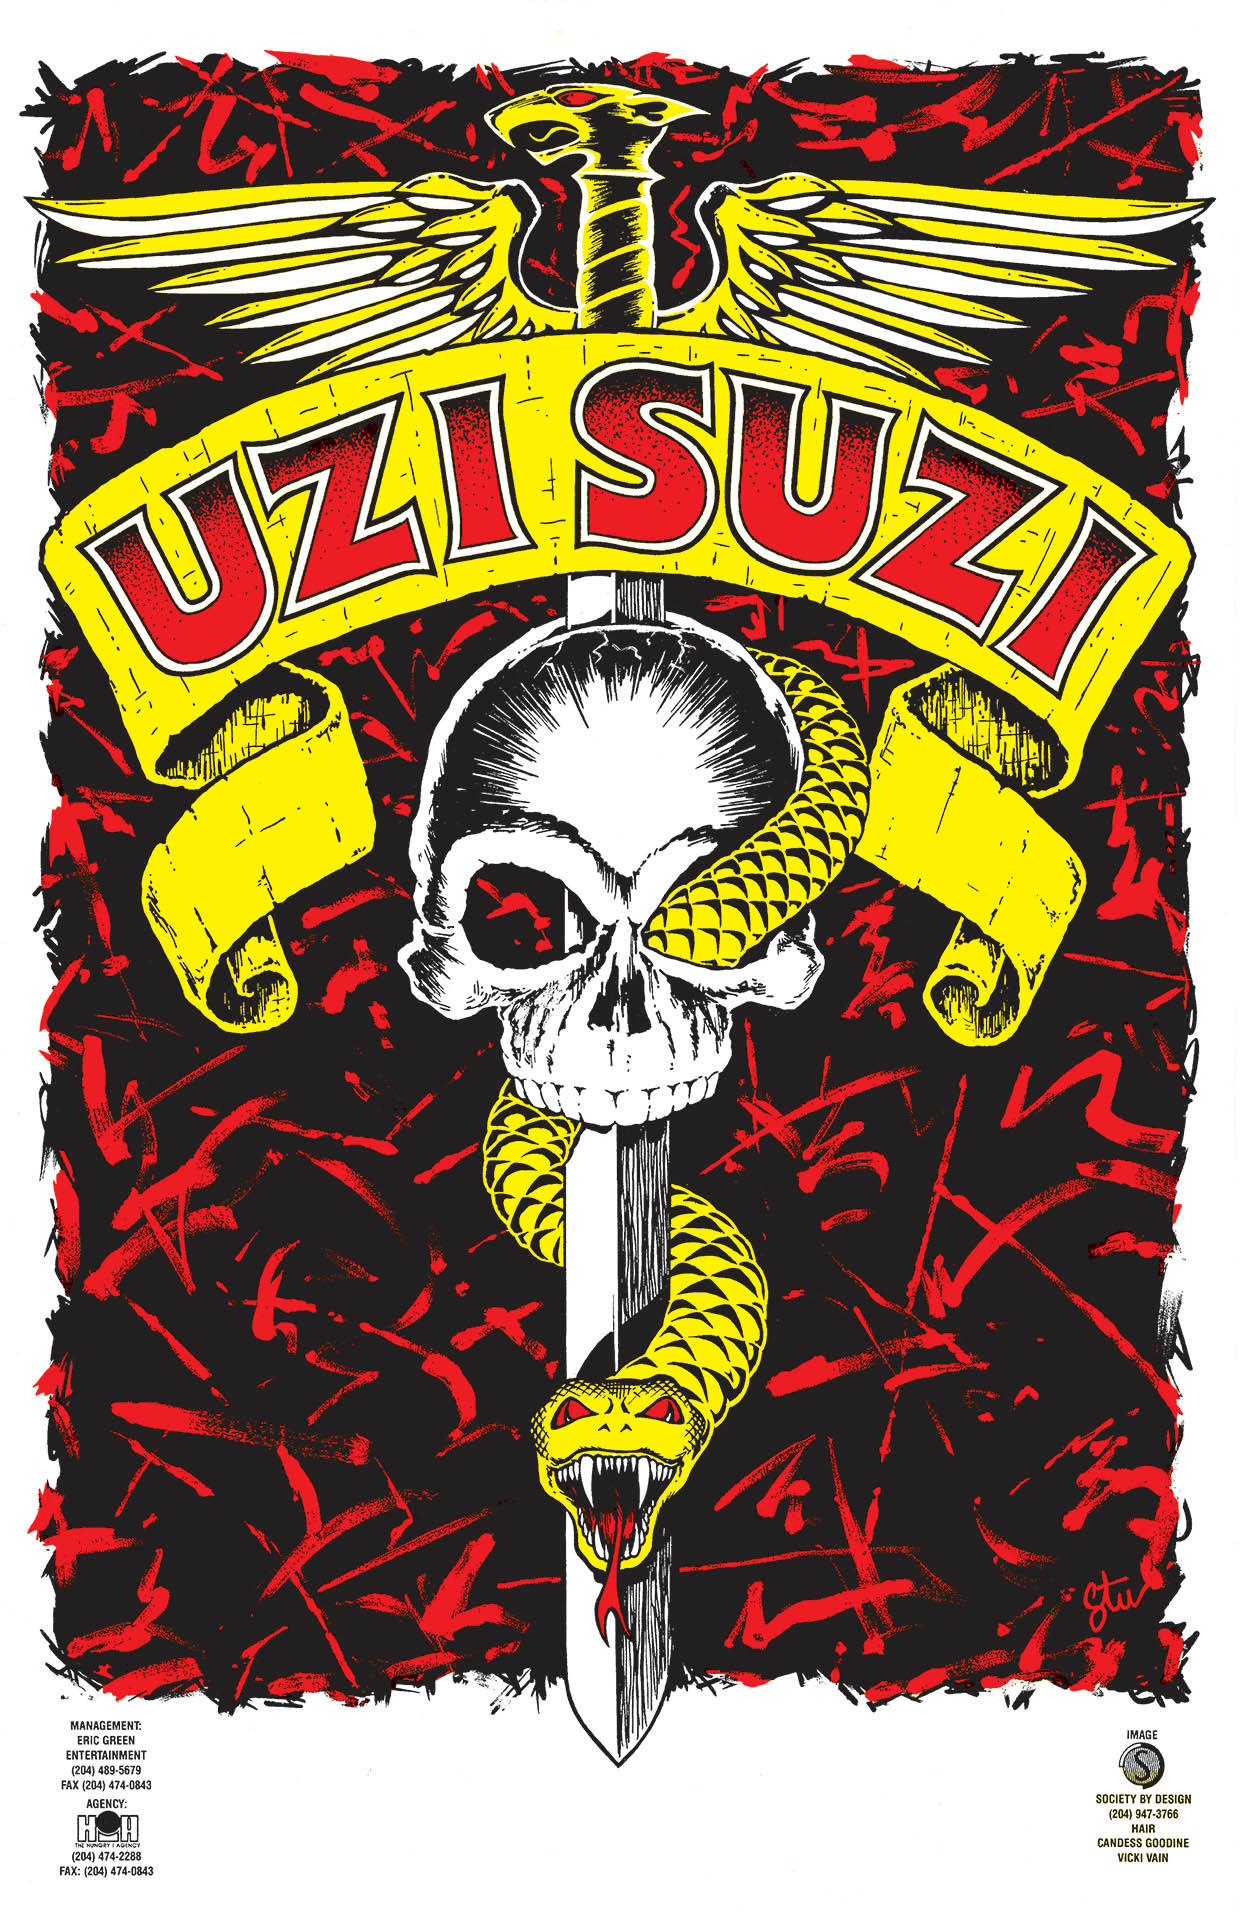 Uzi Suzi – 1990